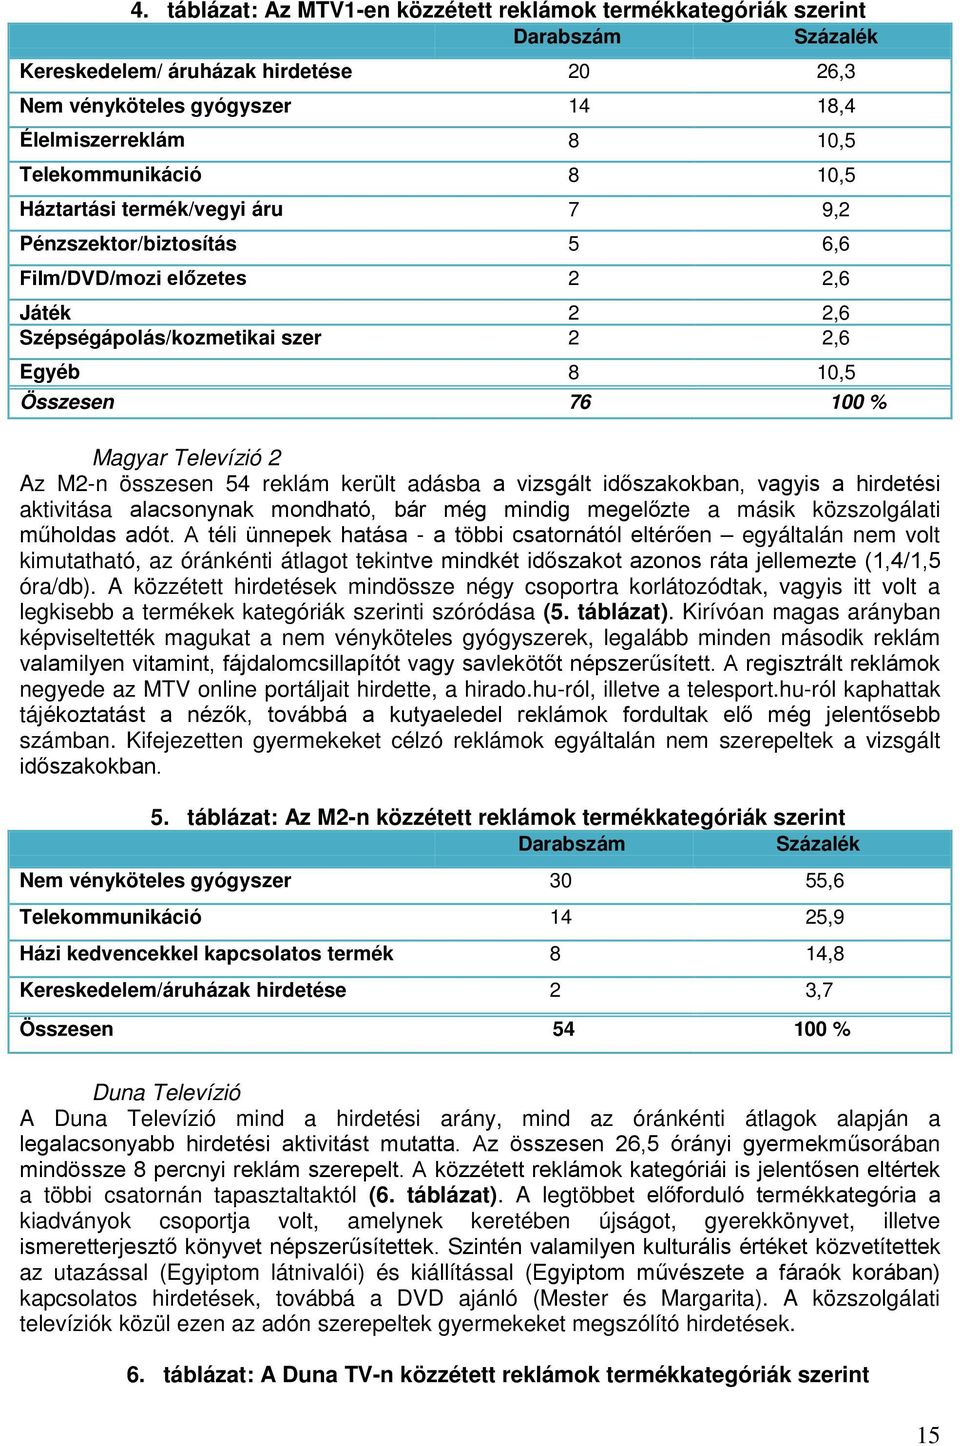 Magyar Televízió 2 Az M2-n összesen 54 reklám került adásba a vizsgált időszakokban, vagyis a hirdetési aktivitása alacsonynak mondható, bár még mindig megelőzte a másik közszolgálati műholdas adót.